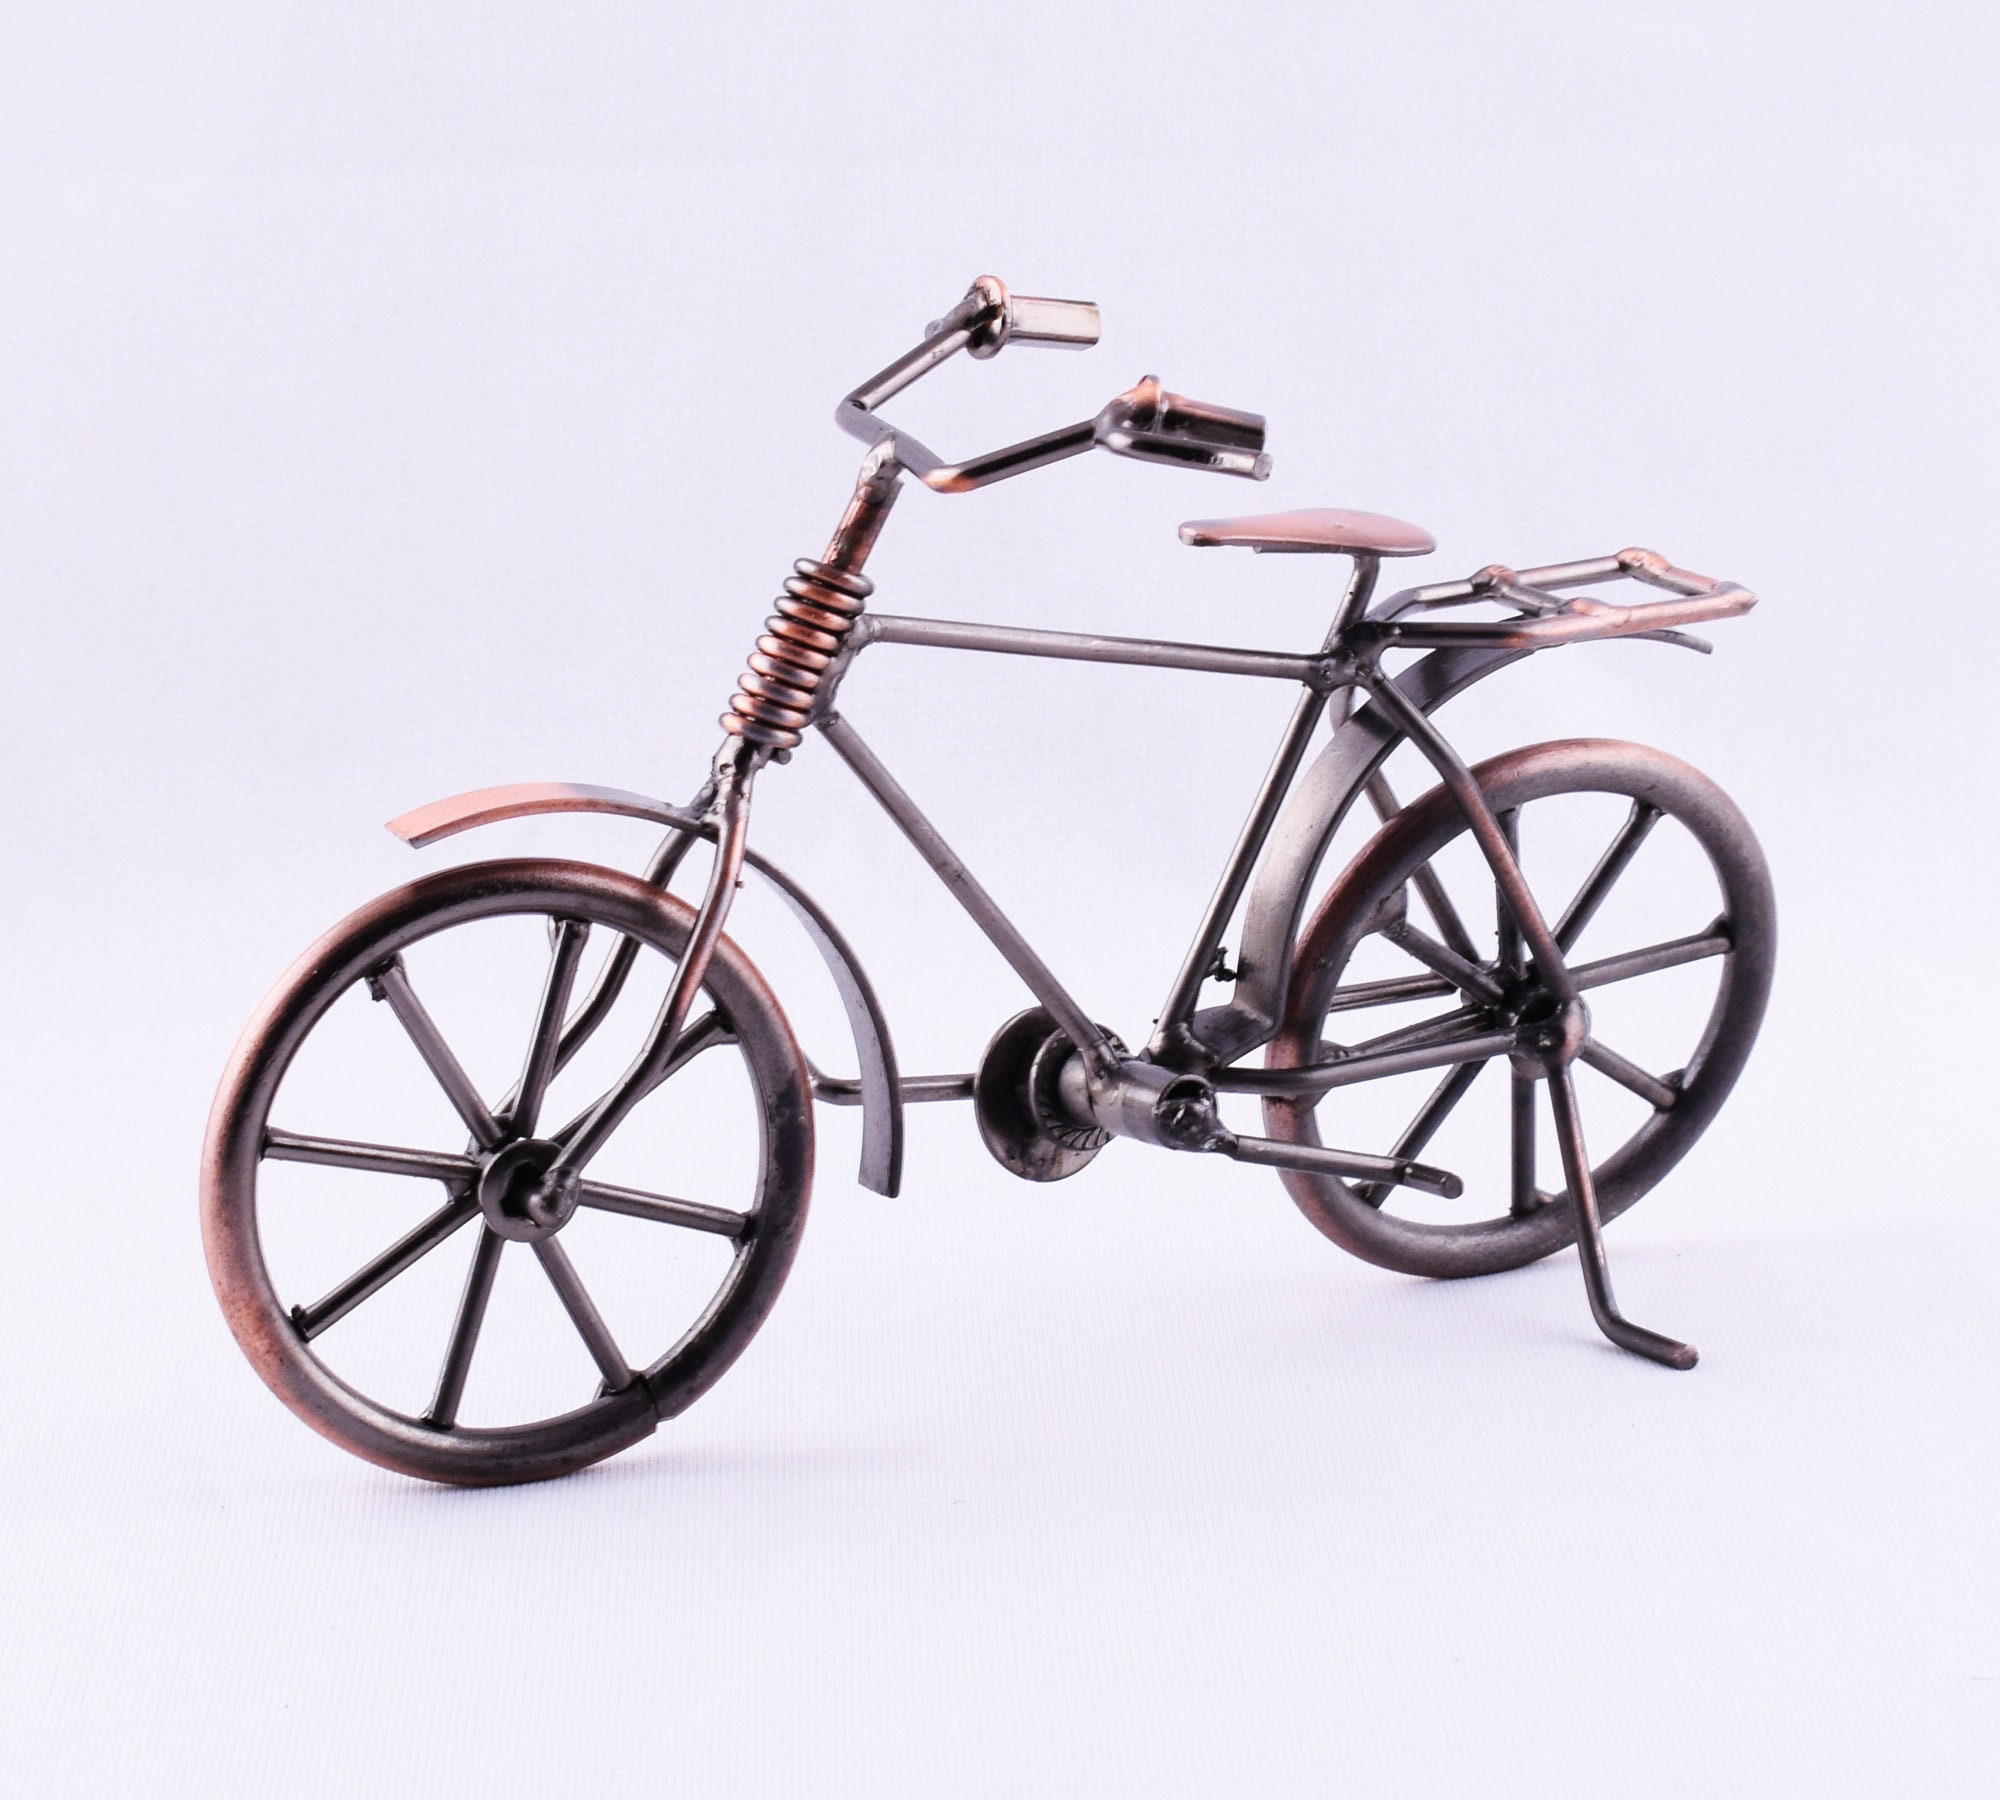 Vintage Metall Fahrrad Modell Kupfer dekorative Fahrrad